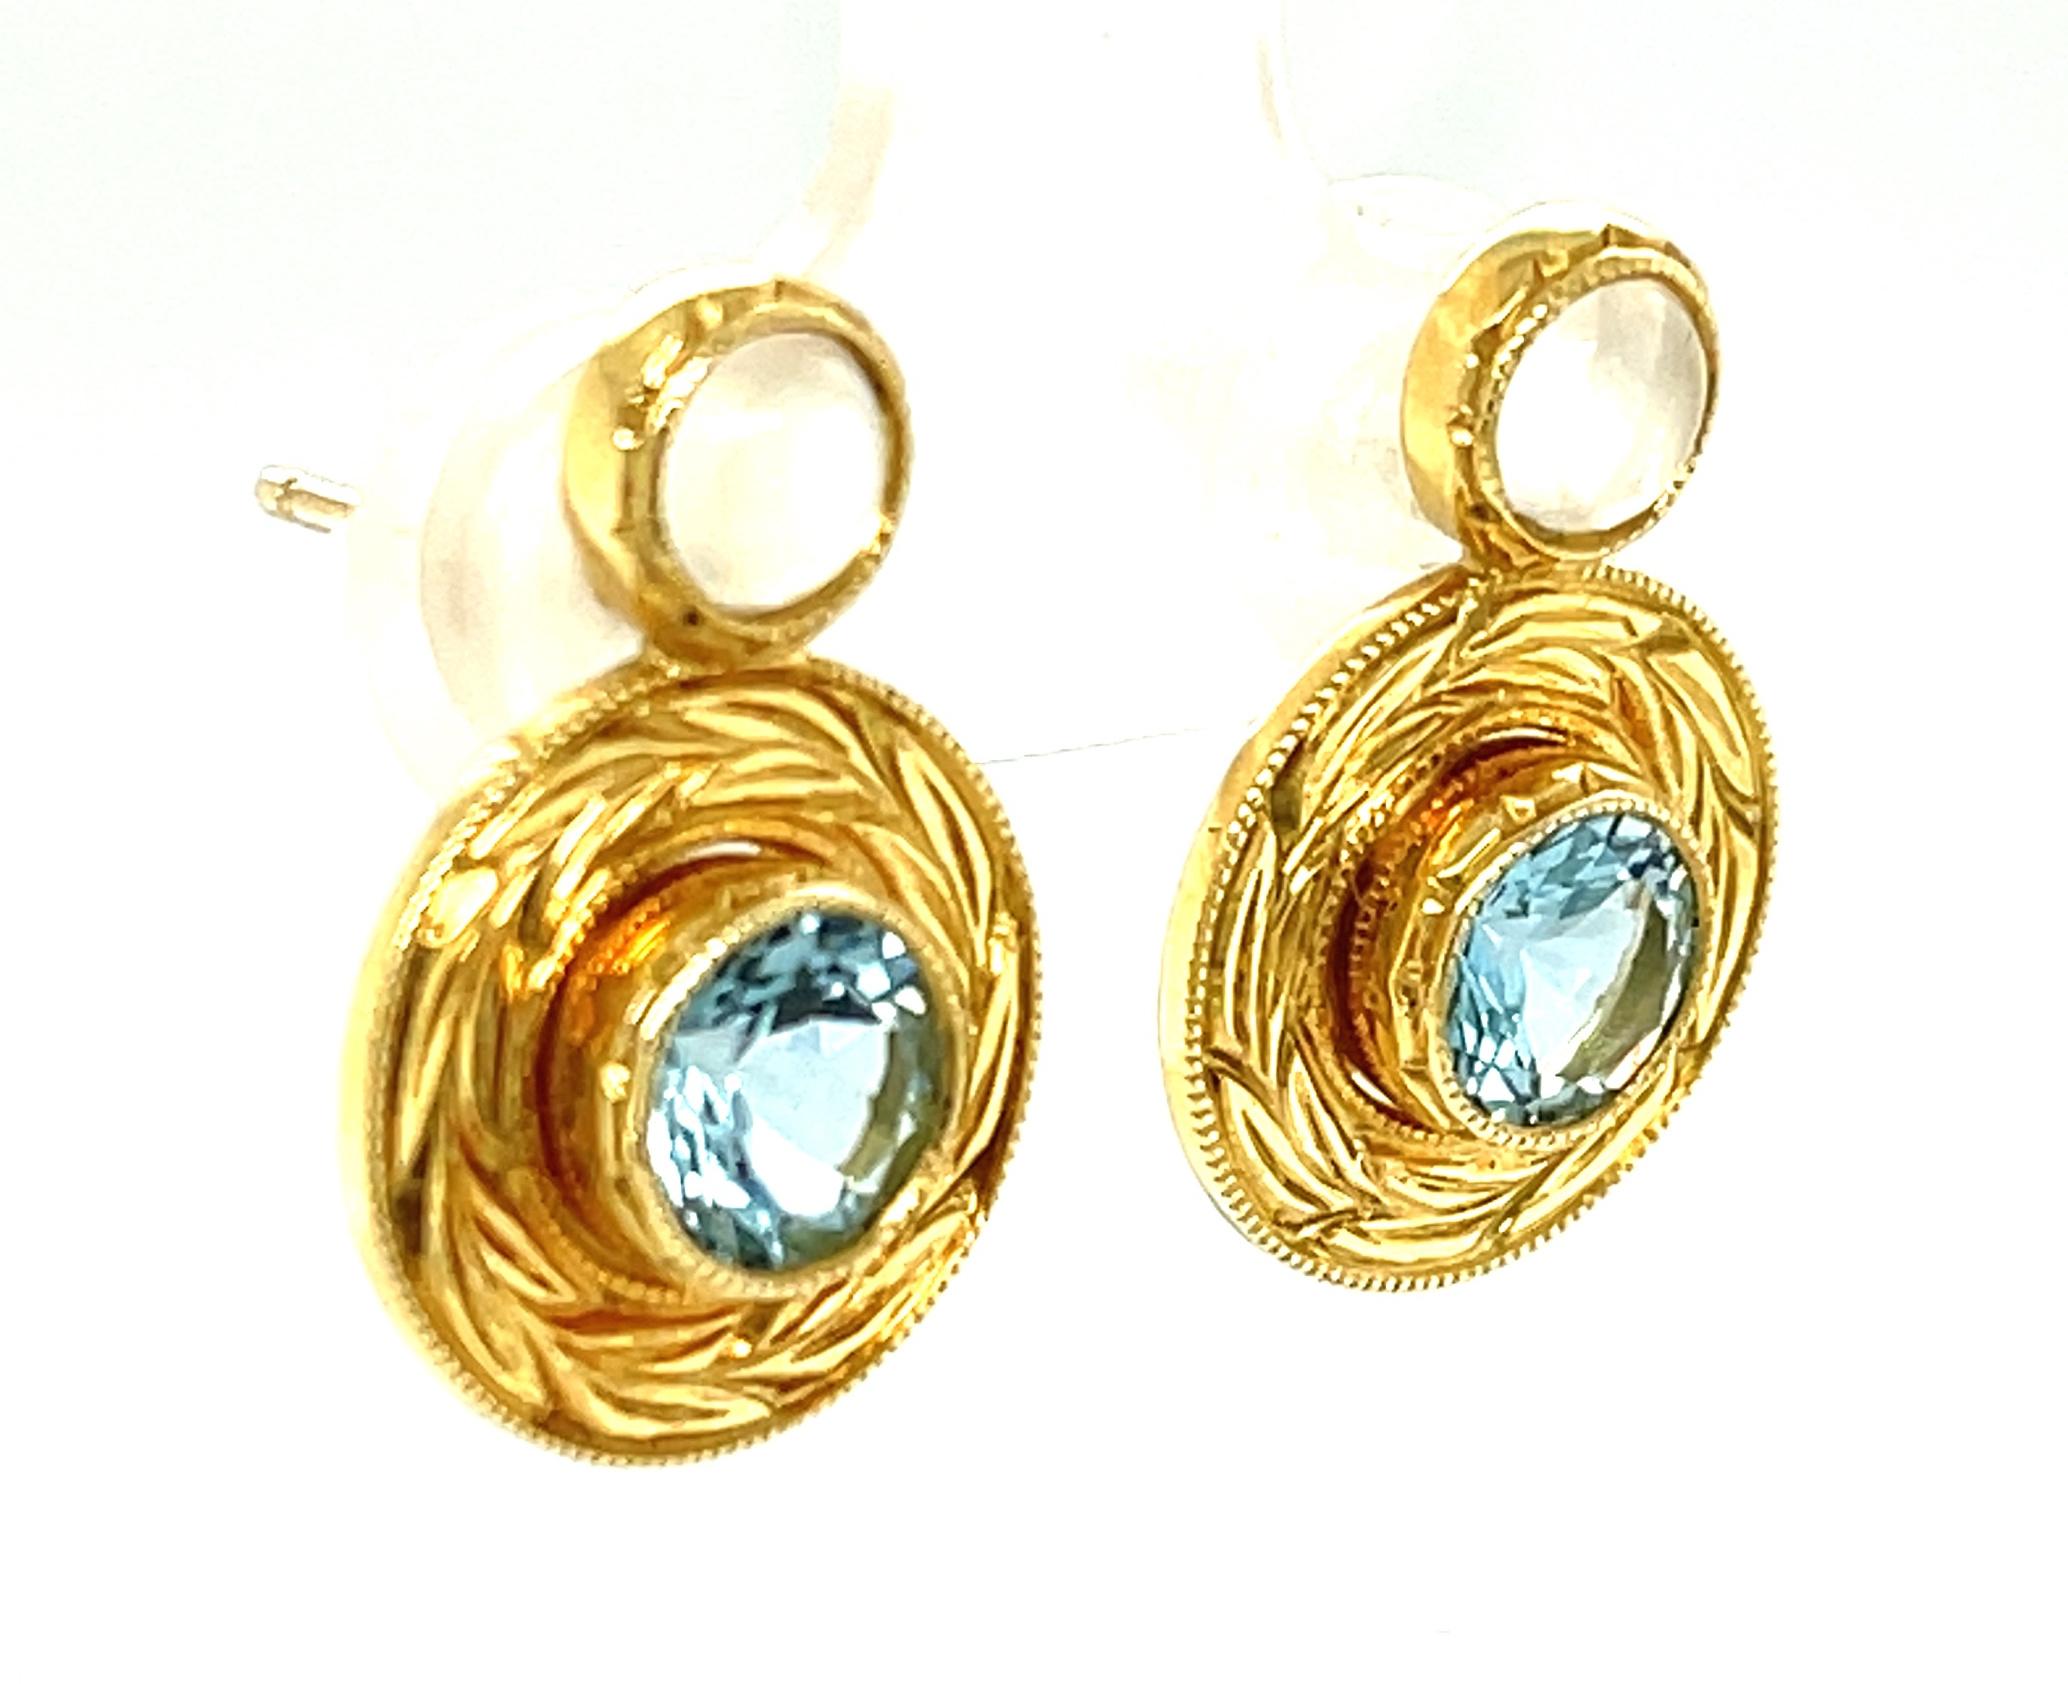 Ces magnifiques boucles d'oreilles présentent des pierres précieuses d'aigue-marine bleue étincelantes et des cabochons de pierre de lune lumineux sertis dans des biseaux en or jaune 18 carats. Les aigue-marines sont serties dans des montures en or